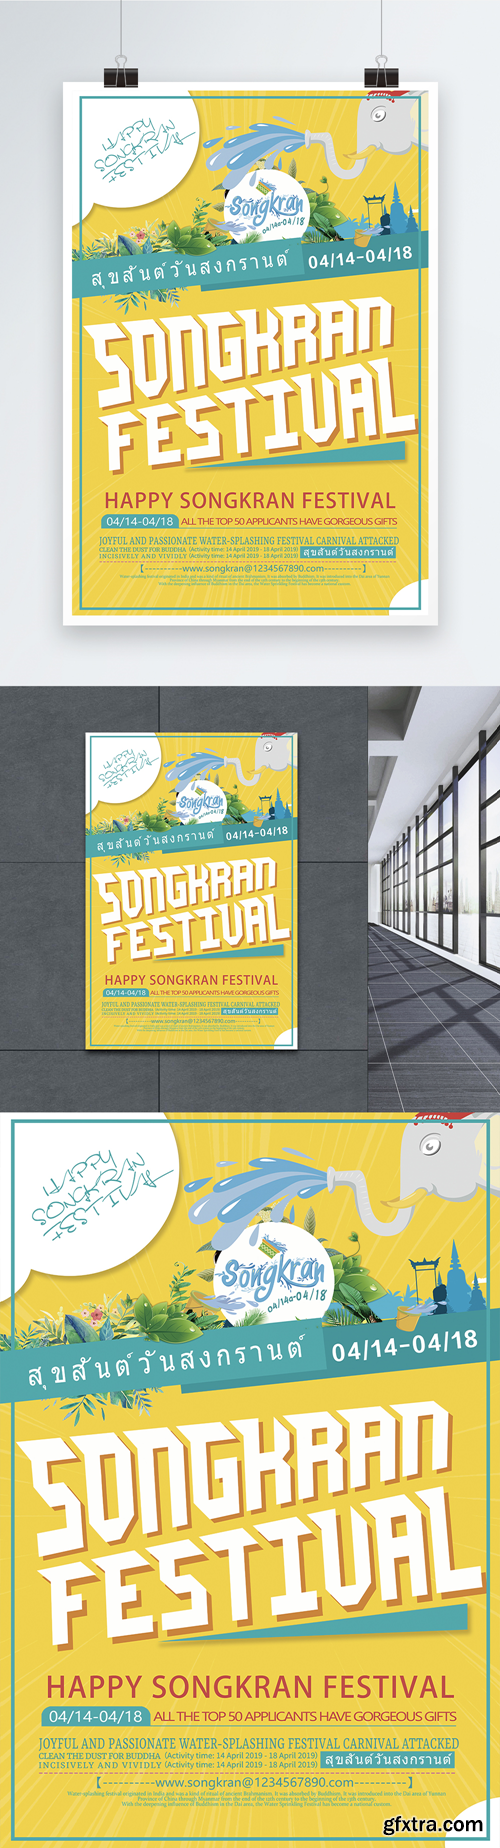 cool songkran festival poster design